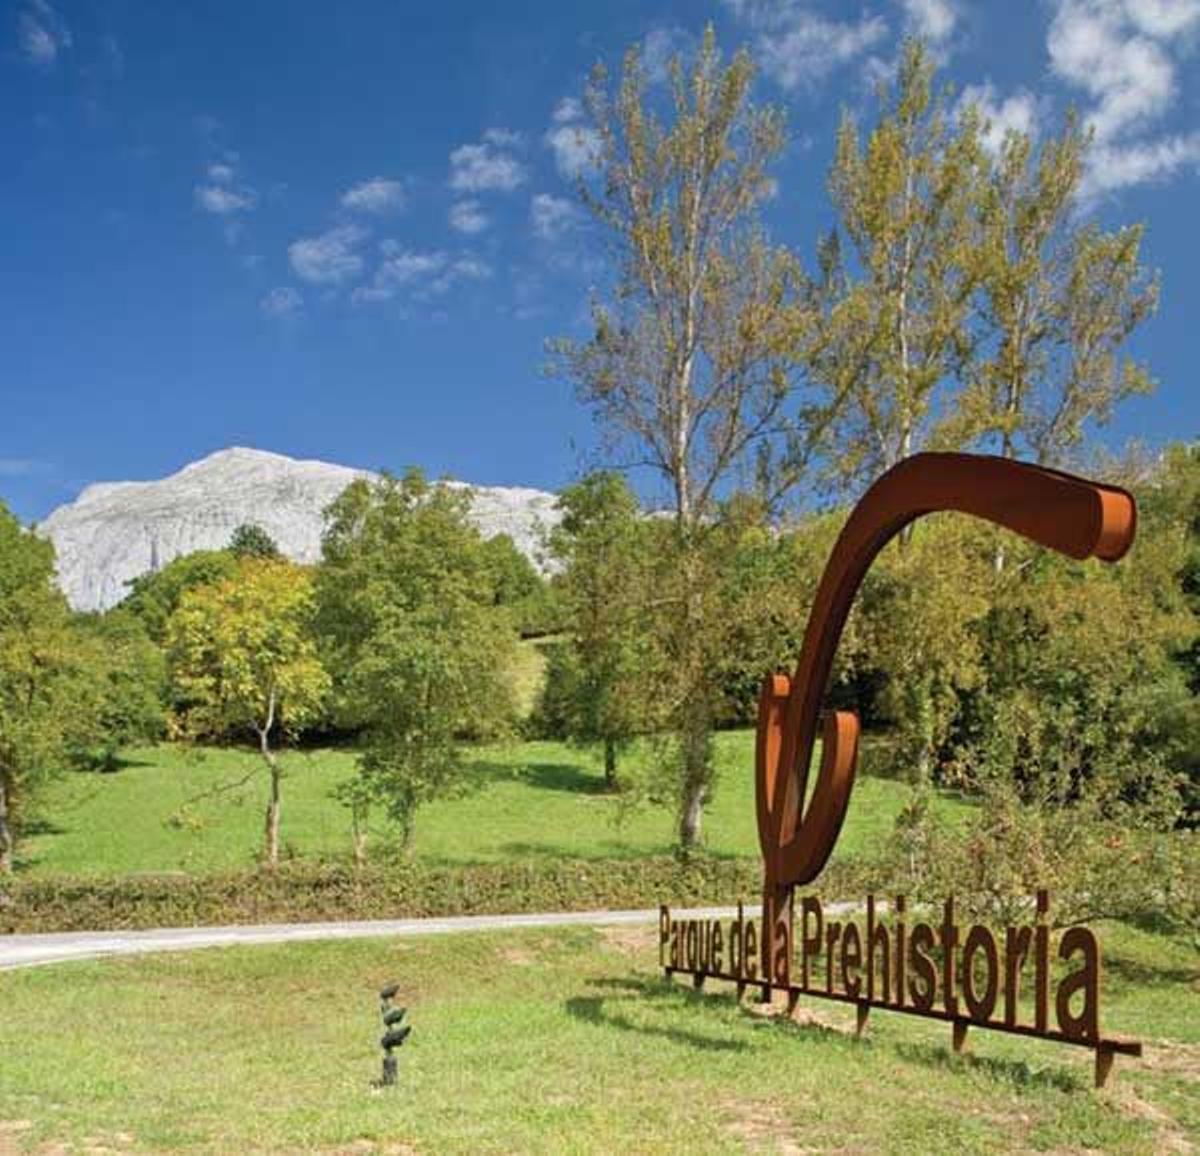 Entrada del Parque de la Prehistoria de Teverga.